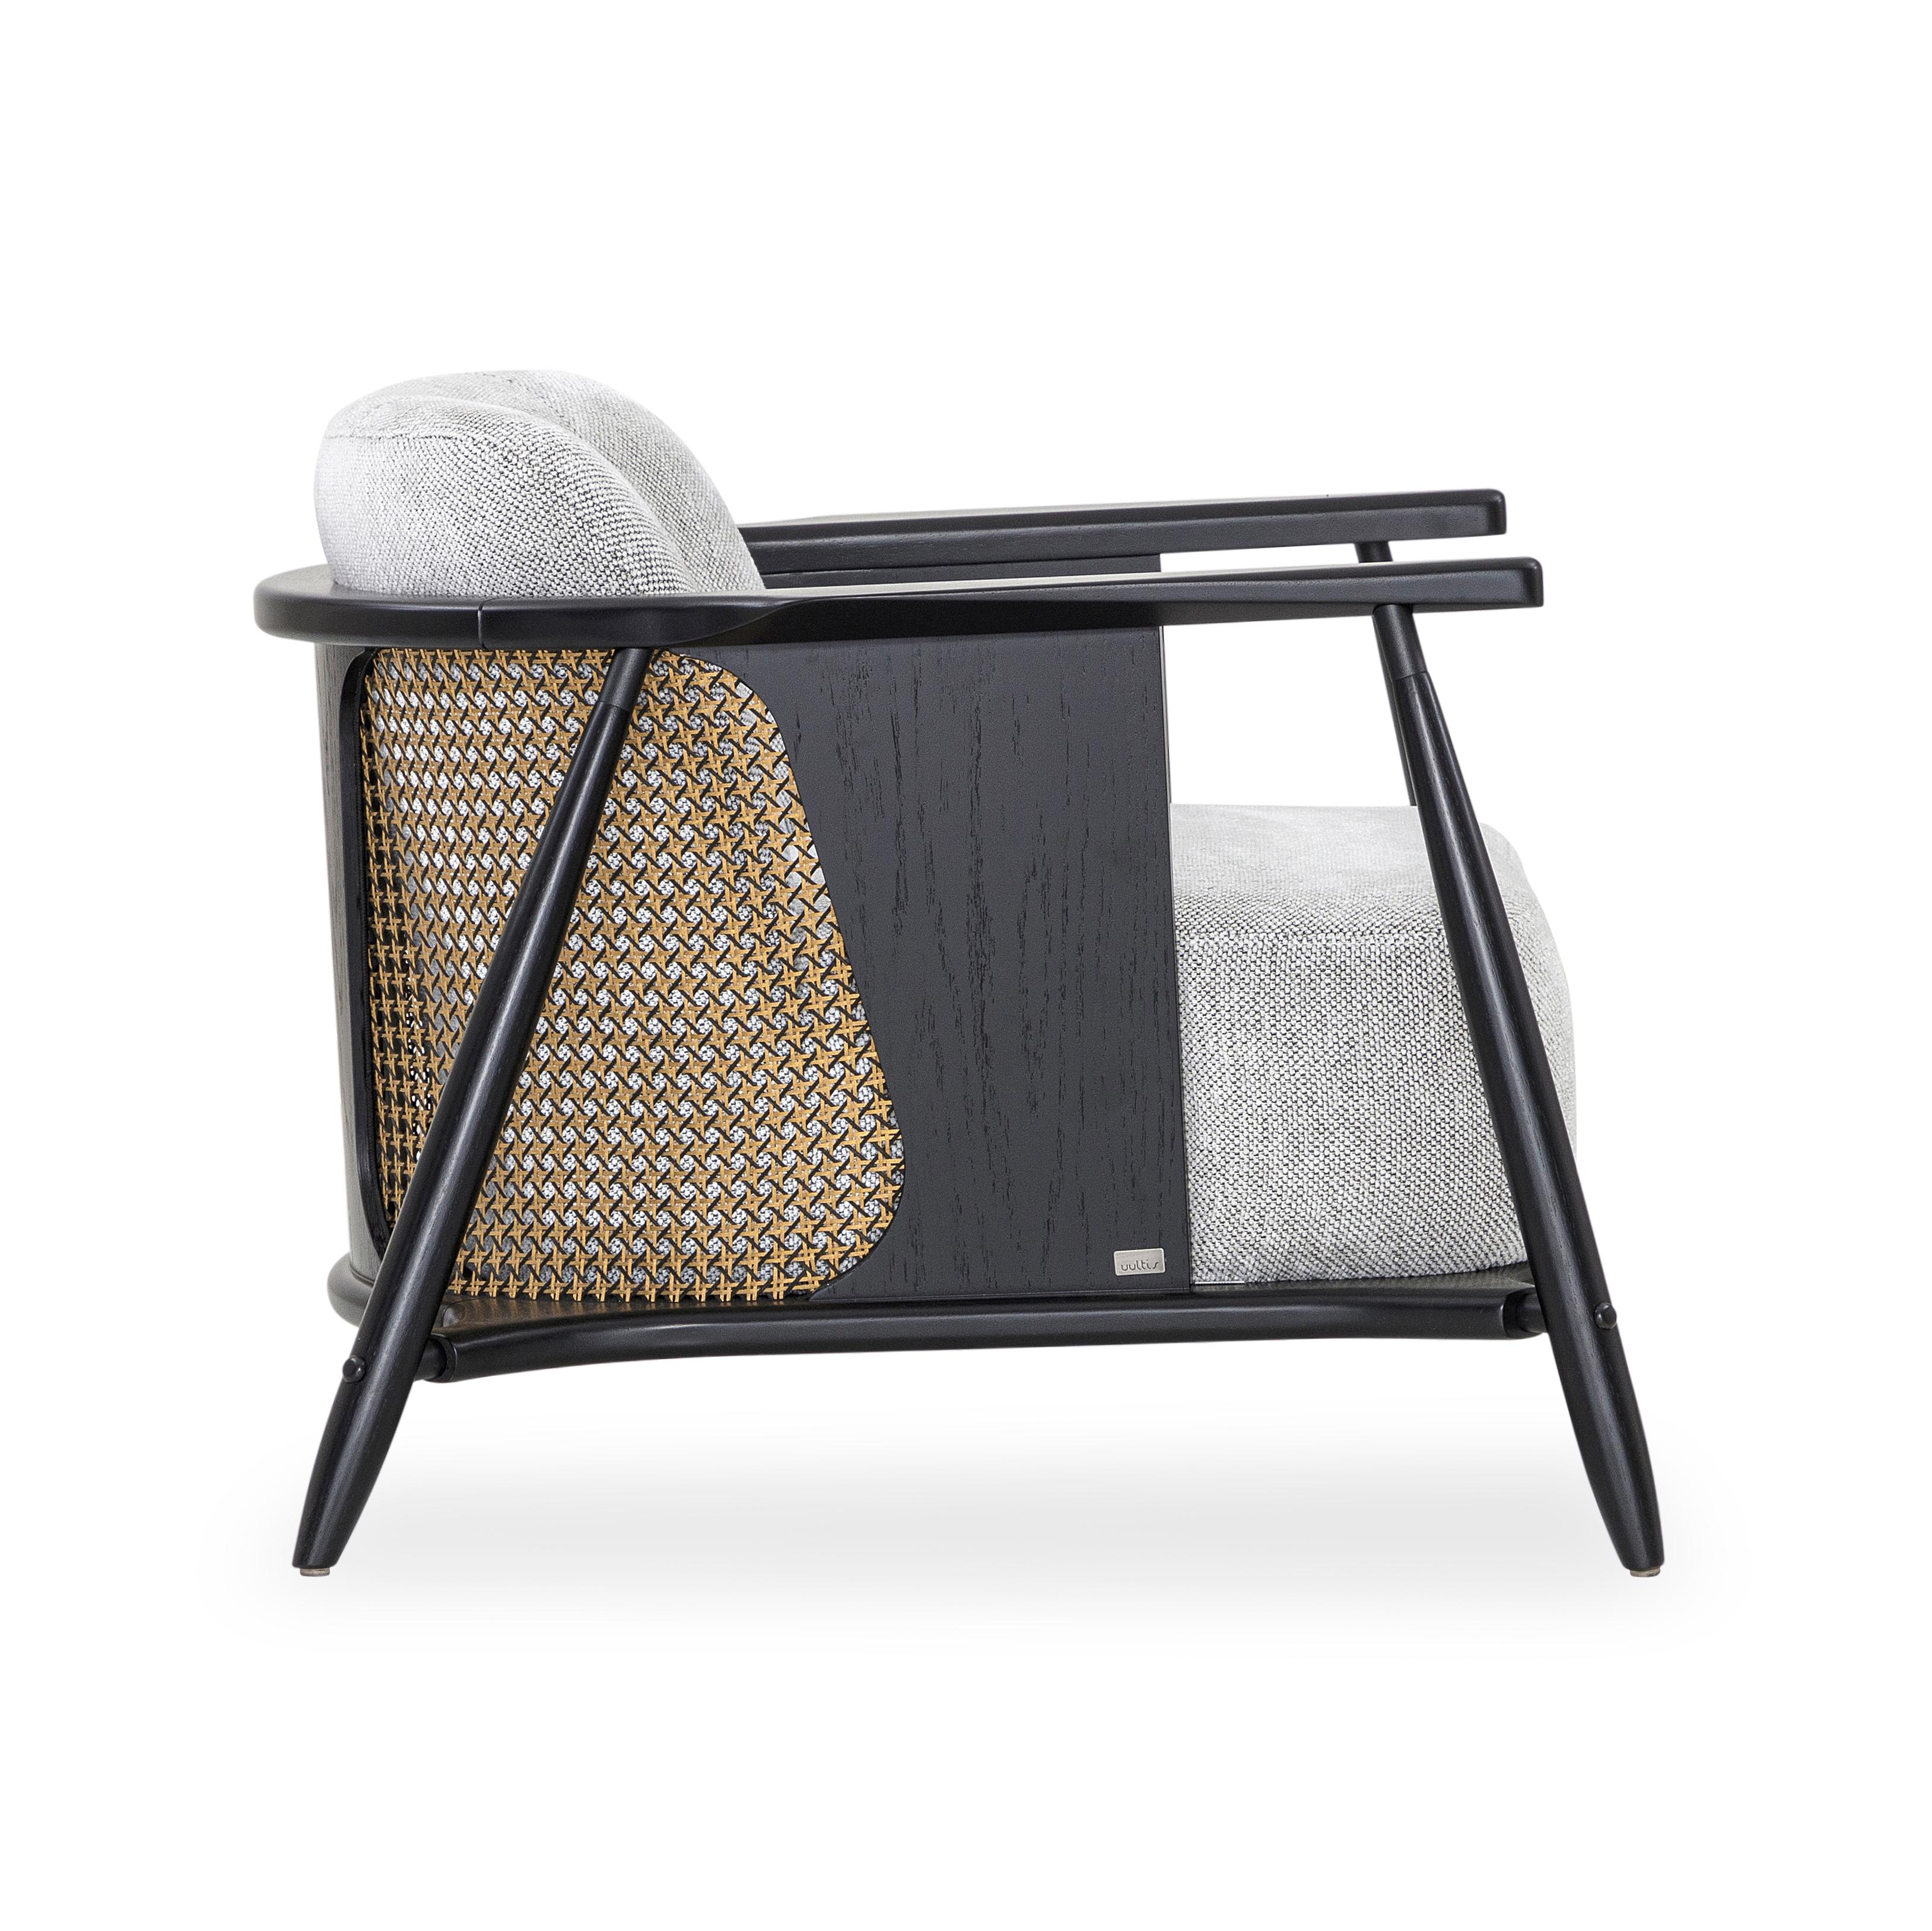 Le designer Aciole Felix et notre équipe créative Uultis du Brésil ont créé cette étonnante chaise d'appoint Laguna avec un tissu rembourré gris clair et une finition en bois Uultis noir pour le cadre et les pieds. Explorant les principaux éléments